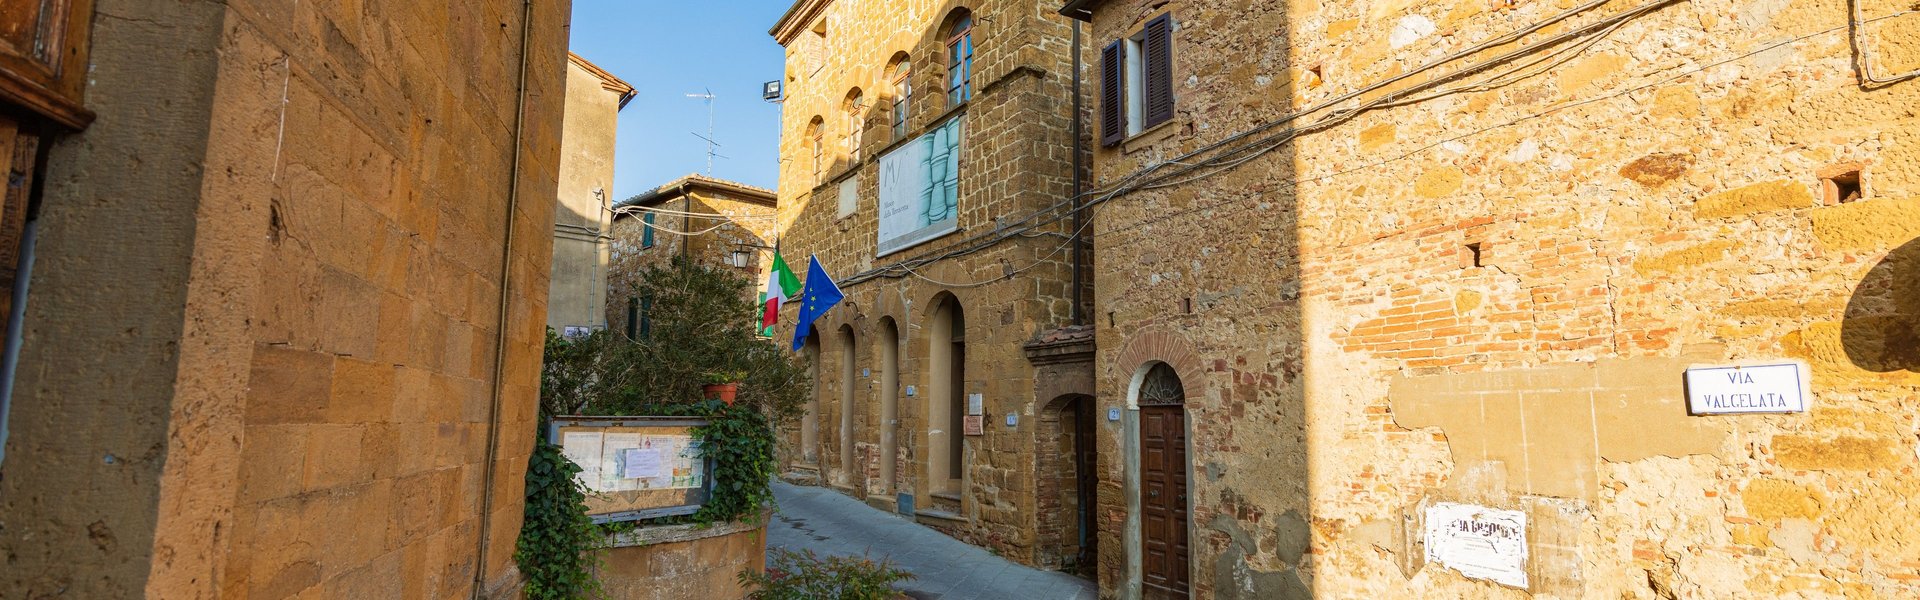 Palazzo Pretorio, Petroio